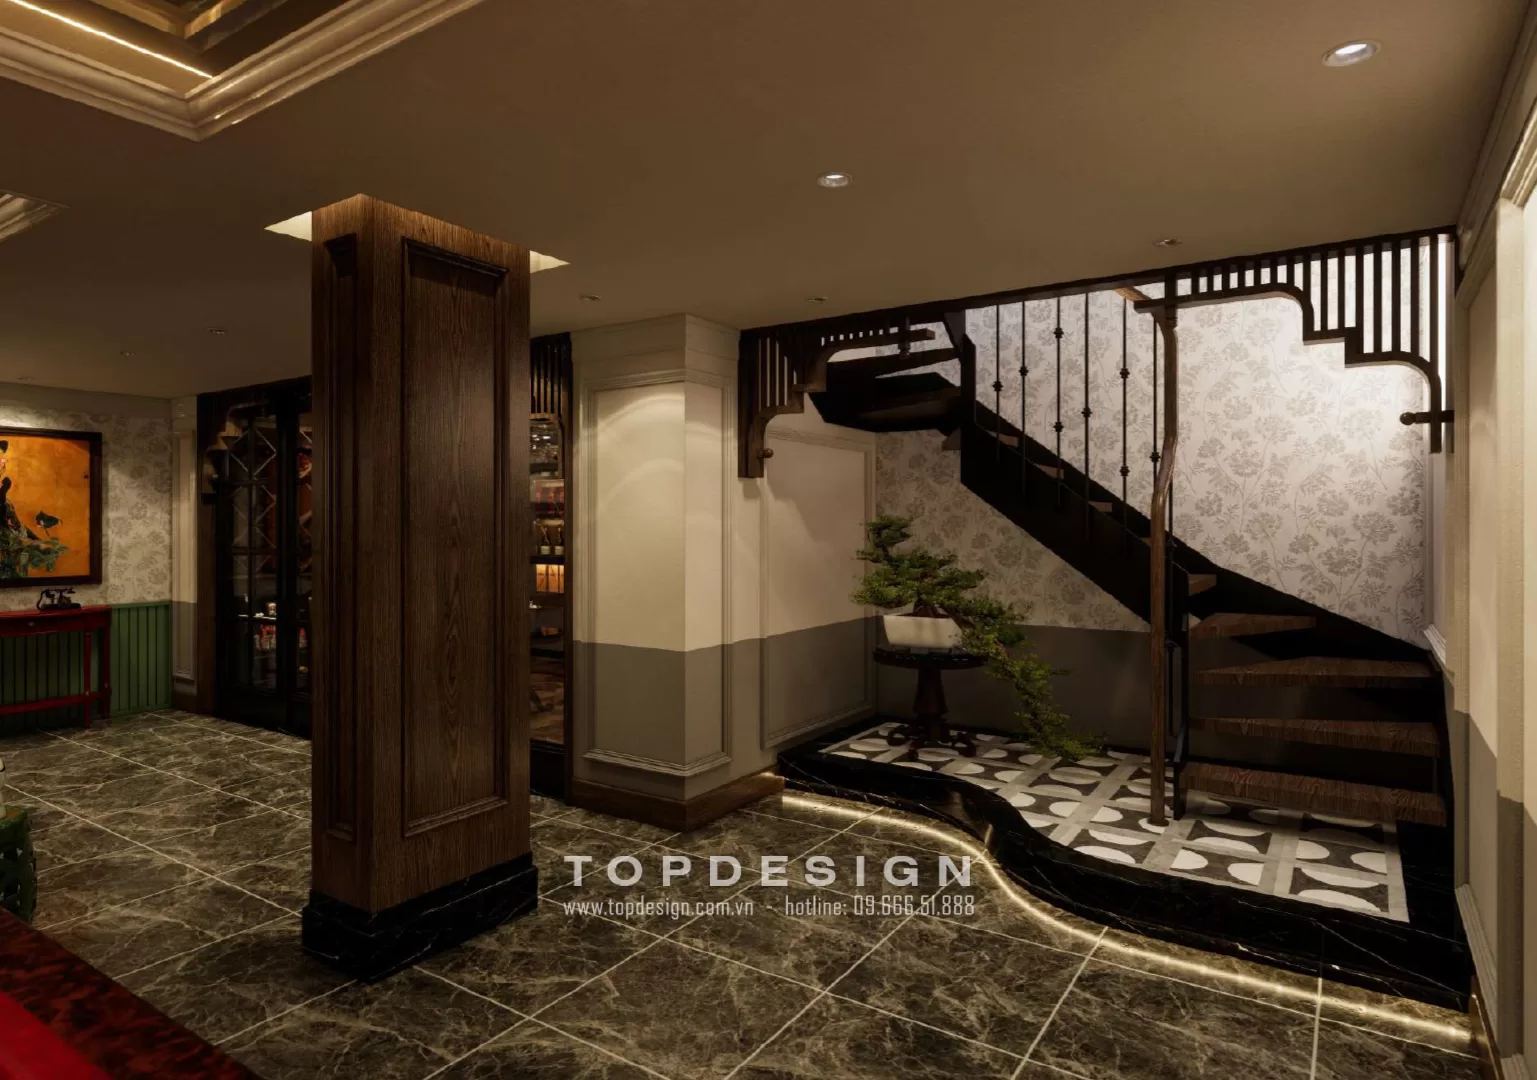 5. Thiết kế nội thất tầng hầm biệt thự sang trọng - TOPDESIGN-sảnh thang